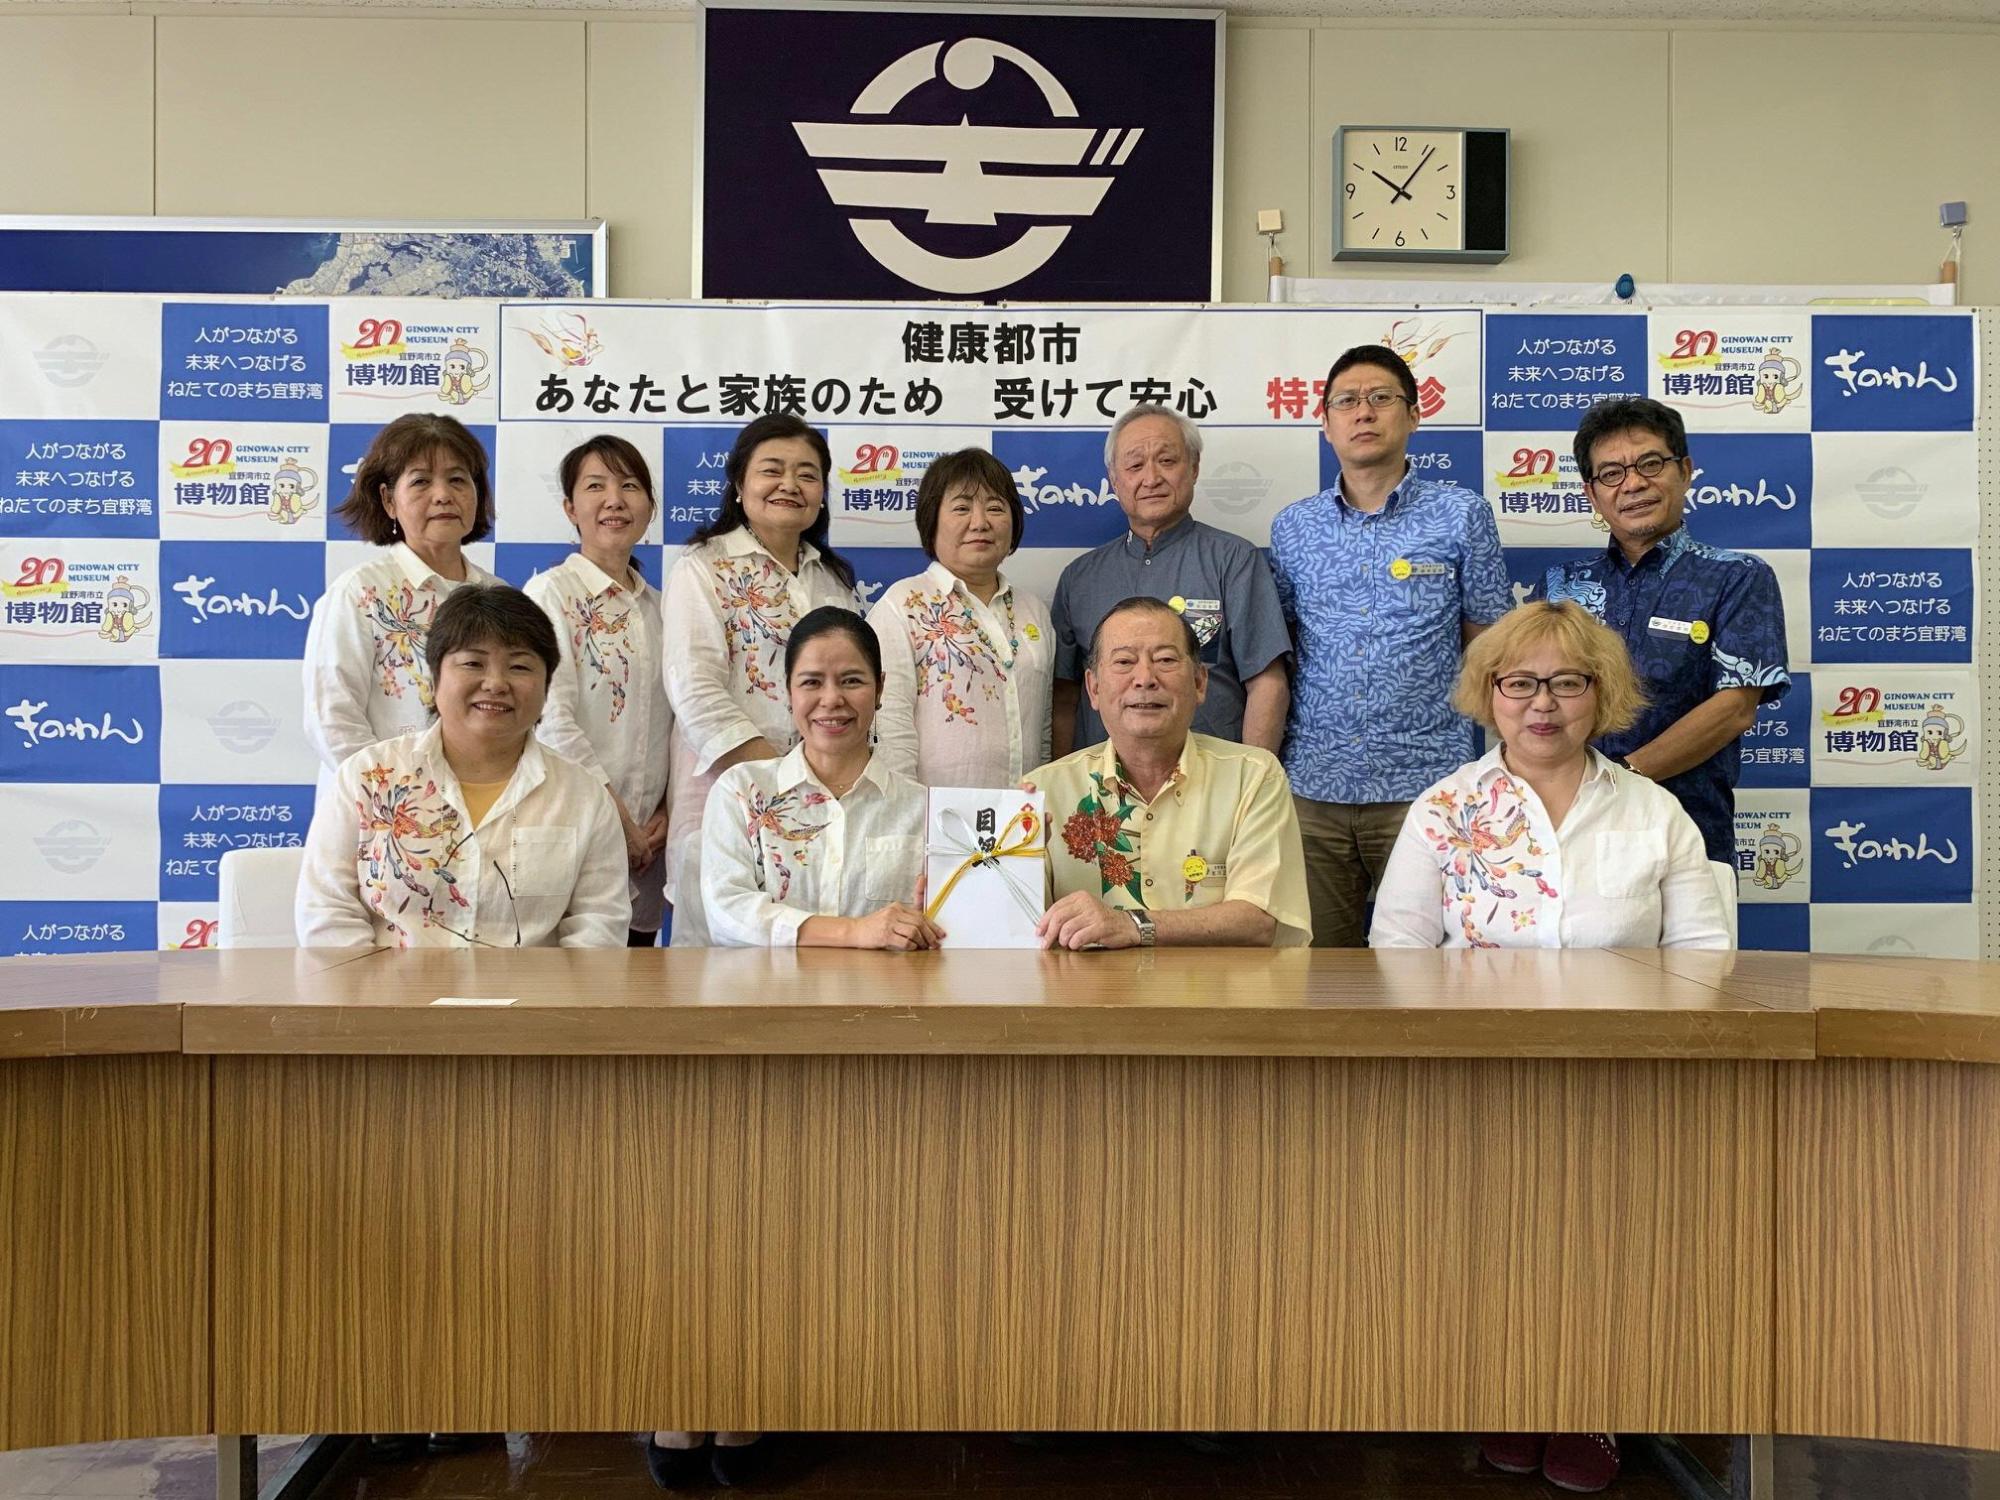 前列に4名の方々が座り、うち松川市長と1名の女性が目録を持っており、後方には関係者の方々が笑顔で写っている集合写真